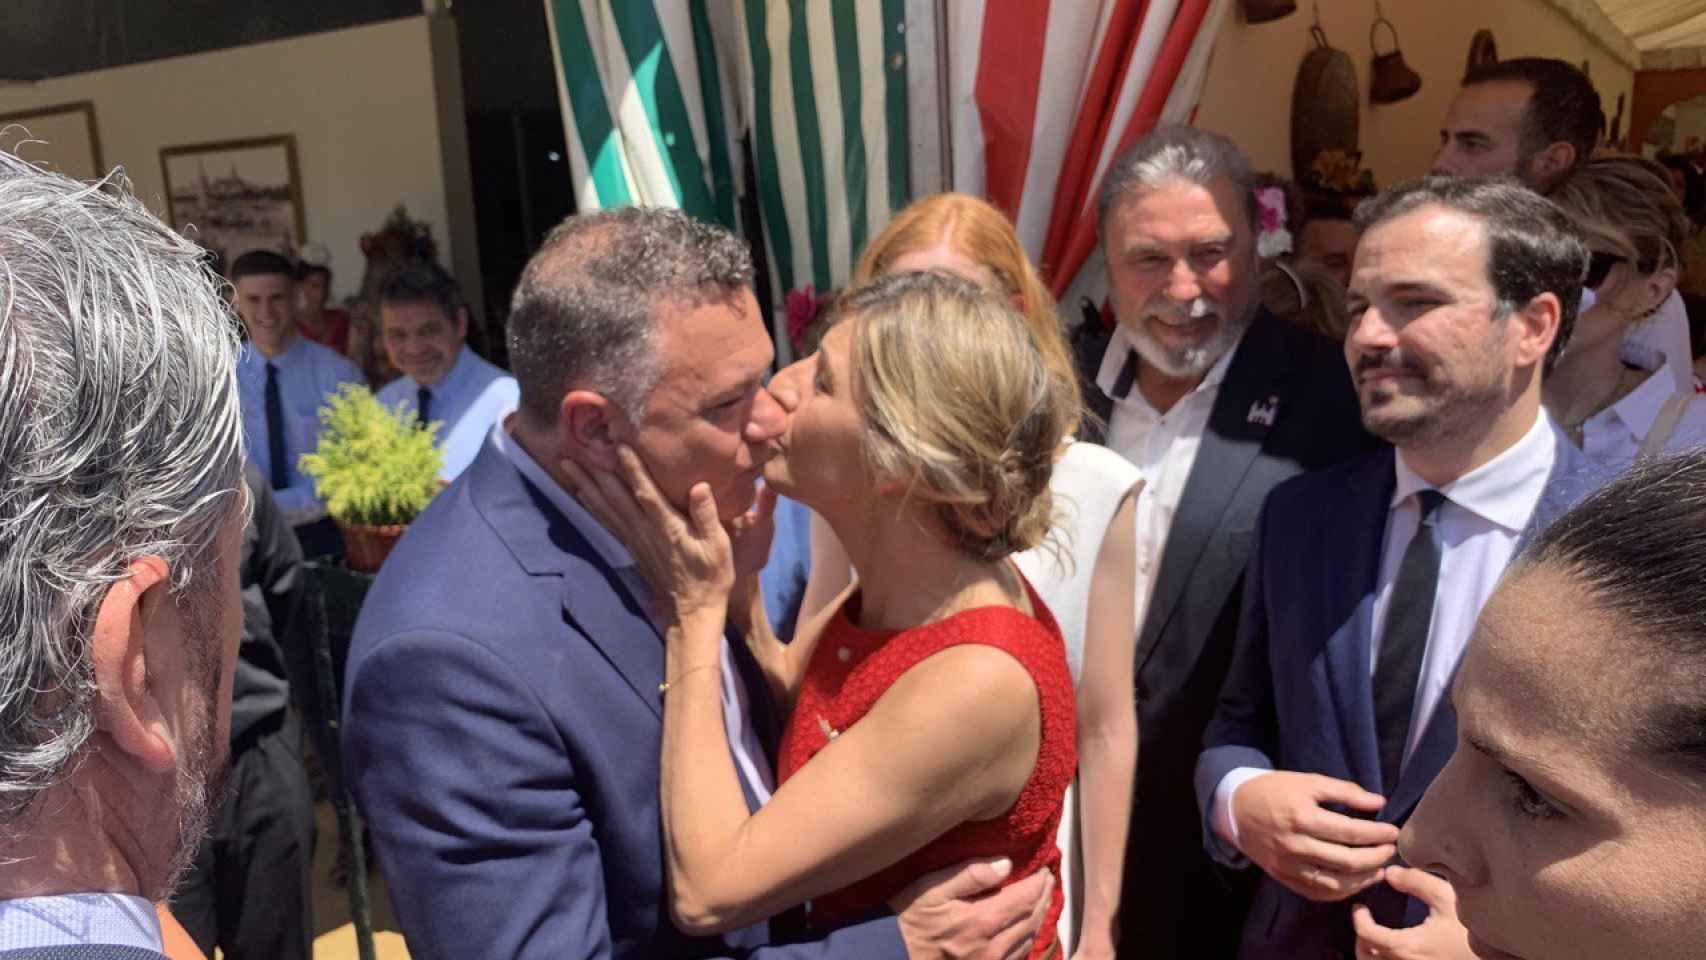 La vicepresidenta del Gobierno Yolanda Díaz besa al candidato de Podemos, Juan Antonio Delgado, en la Feria de Abril de Sevilla.